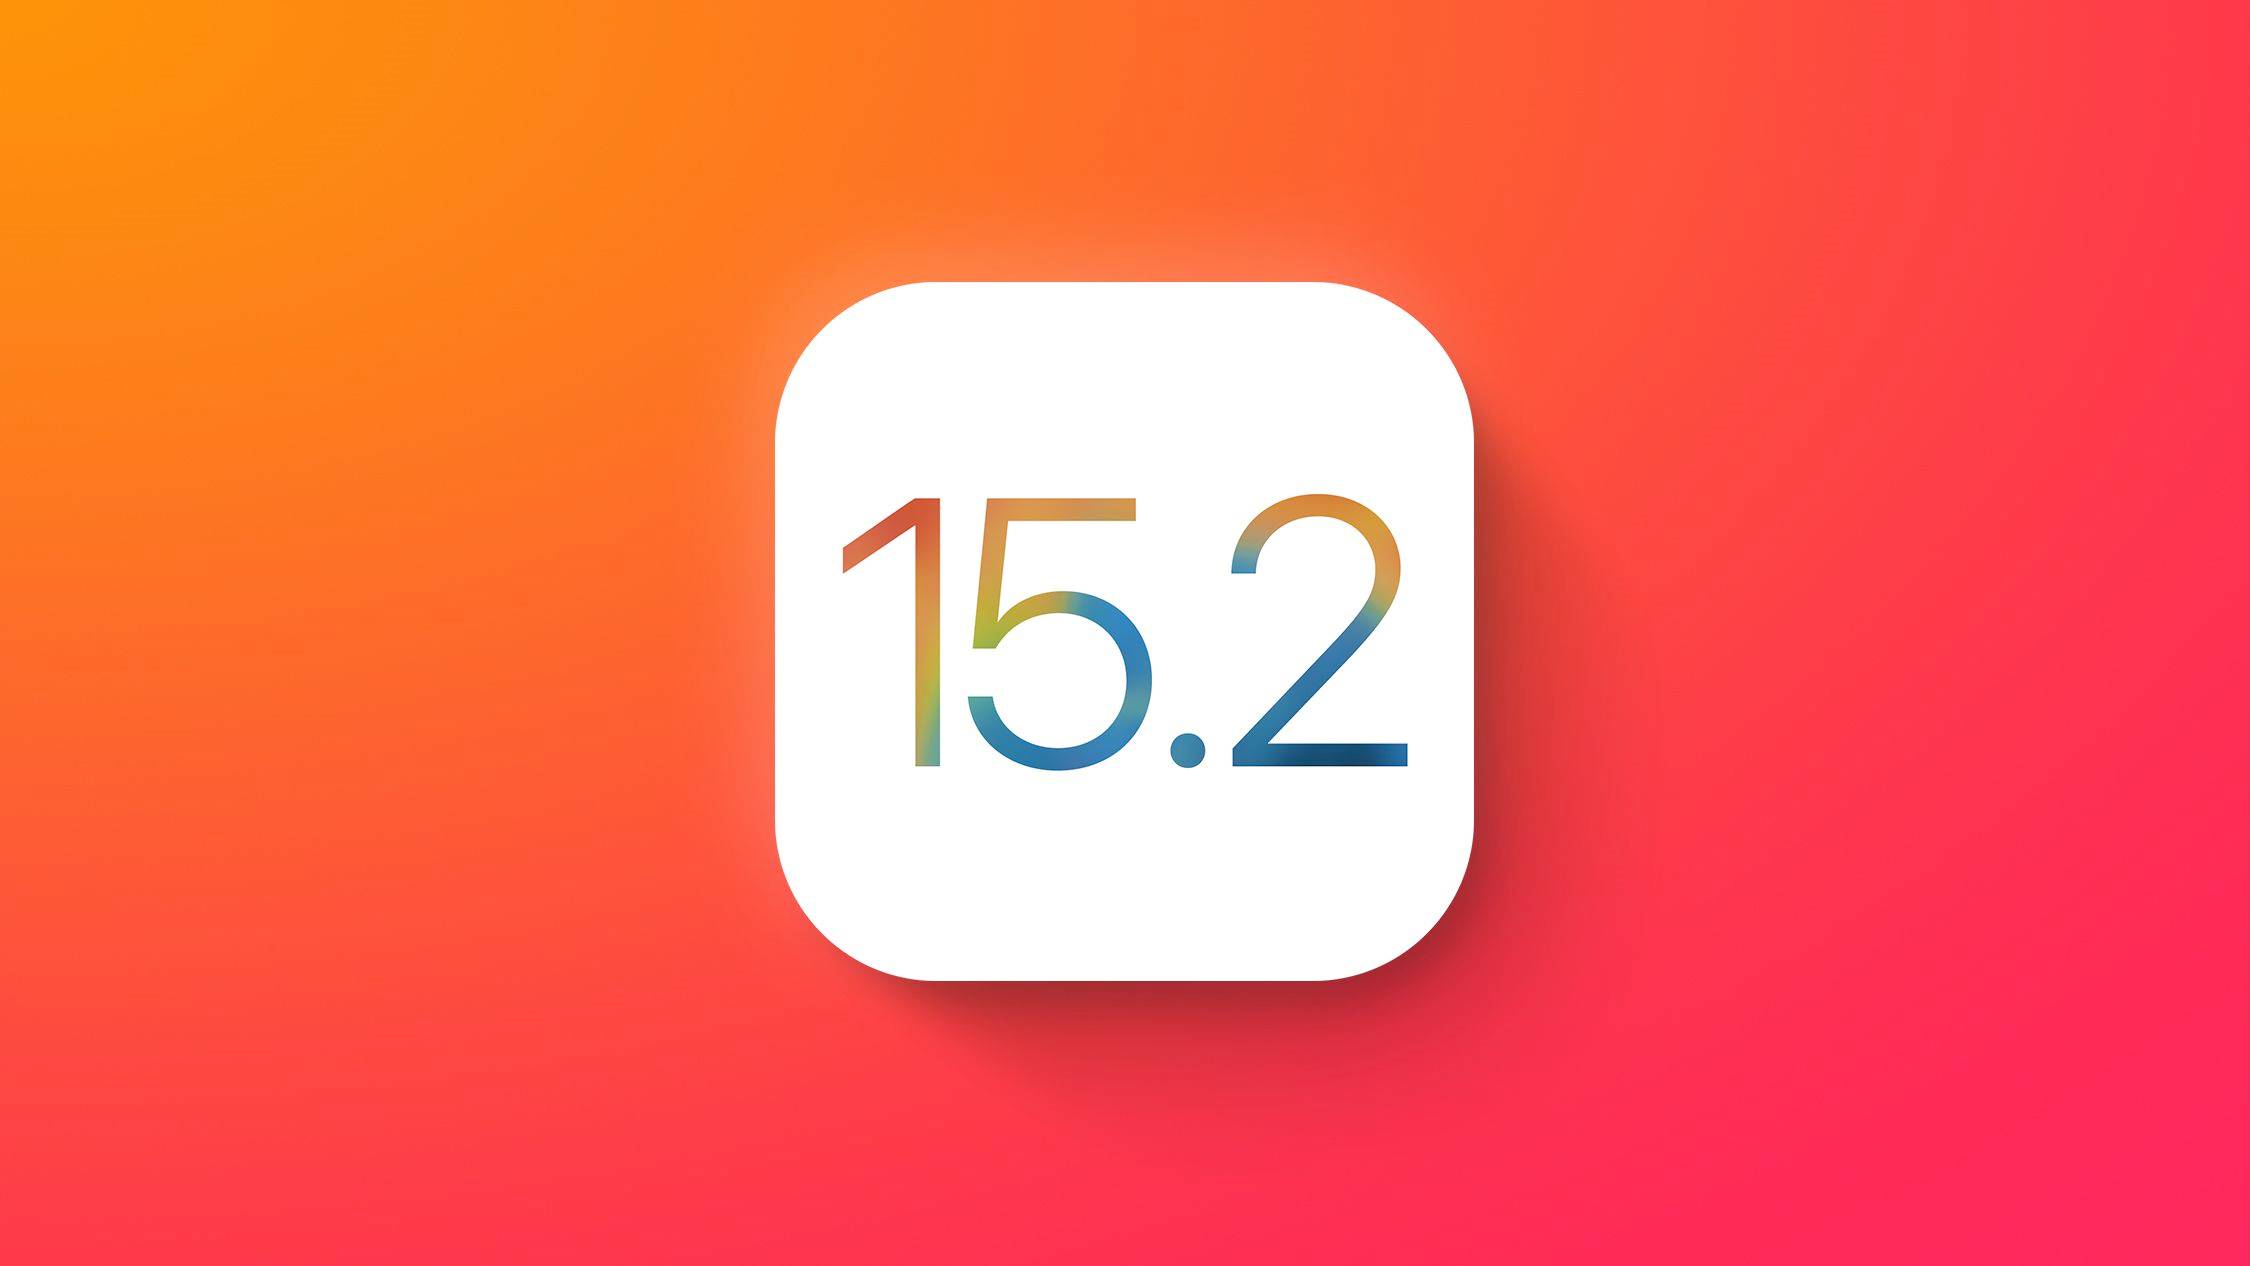 Lanzamiento de iOS 15.2 Noticias iPhone iPad iPod Touch